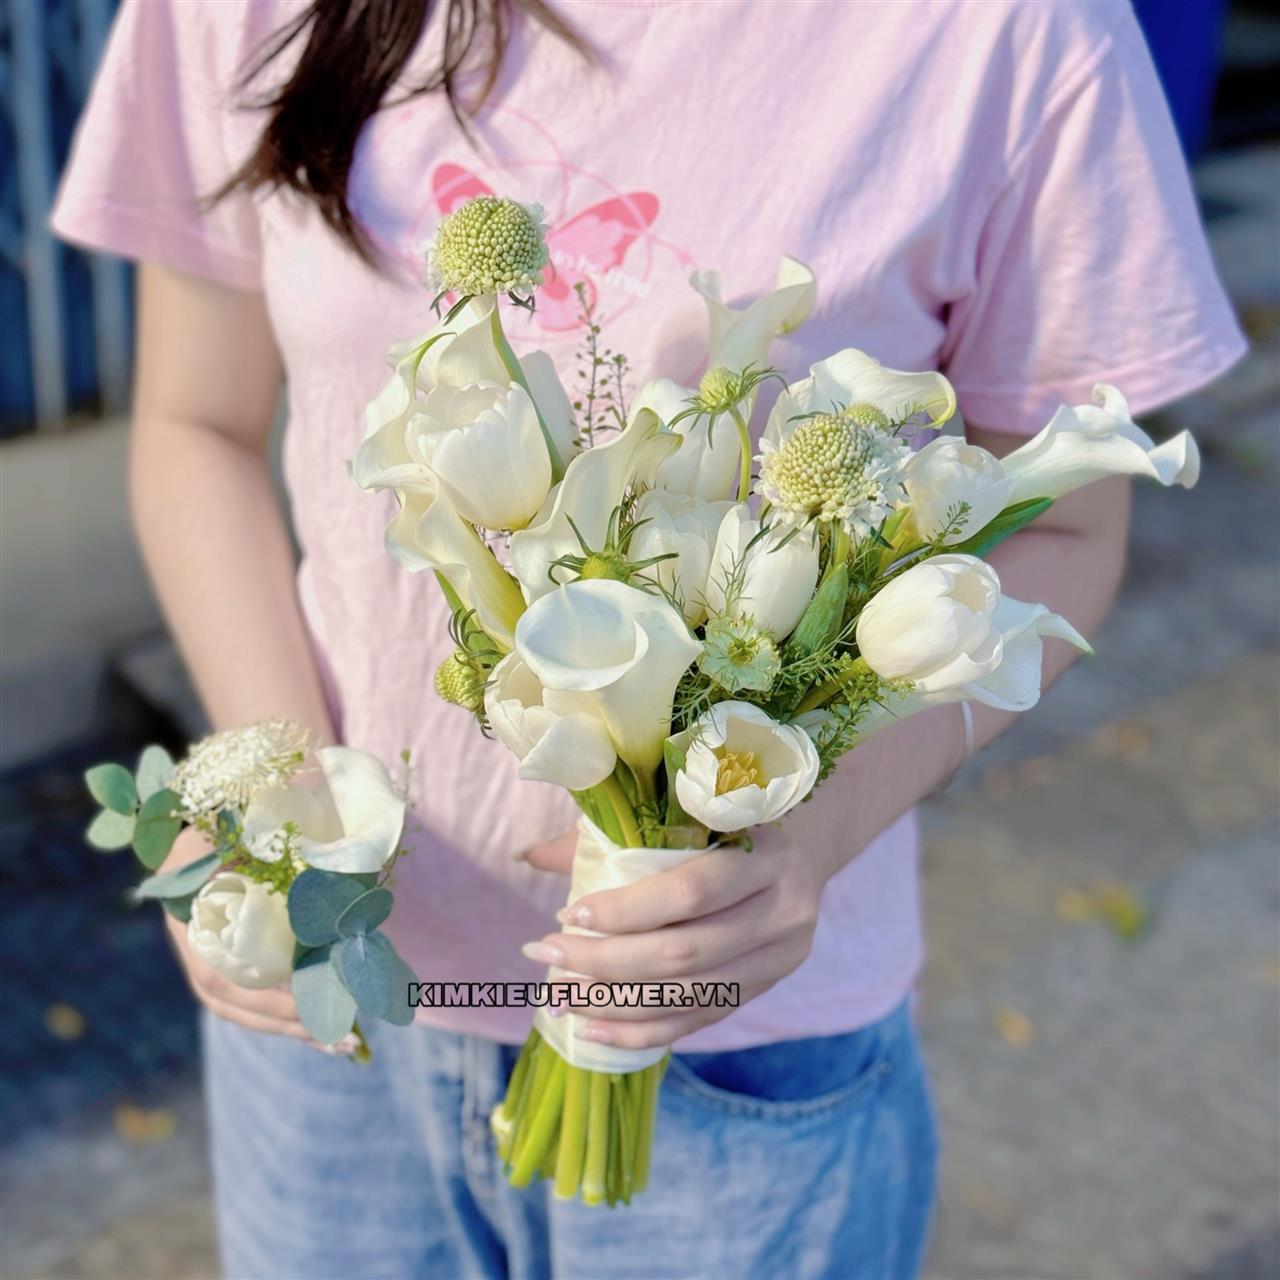 Hoa tulip trắng kết hợp với Calla lily trắng tạo nên bó hoa cầm tay cô câu trang nhã, sang trọng và tinh tế